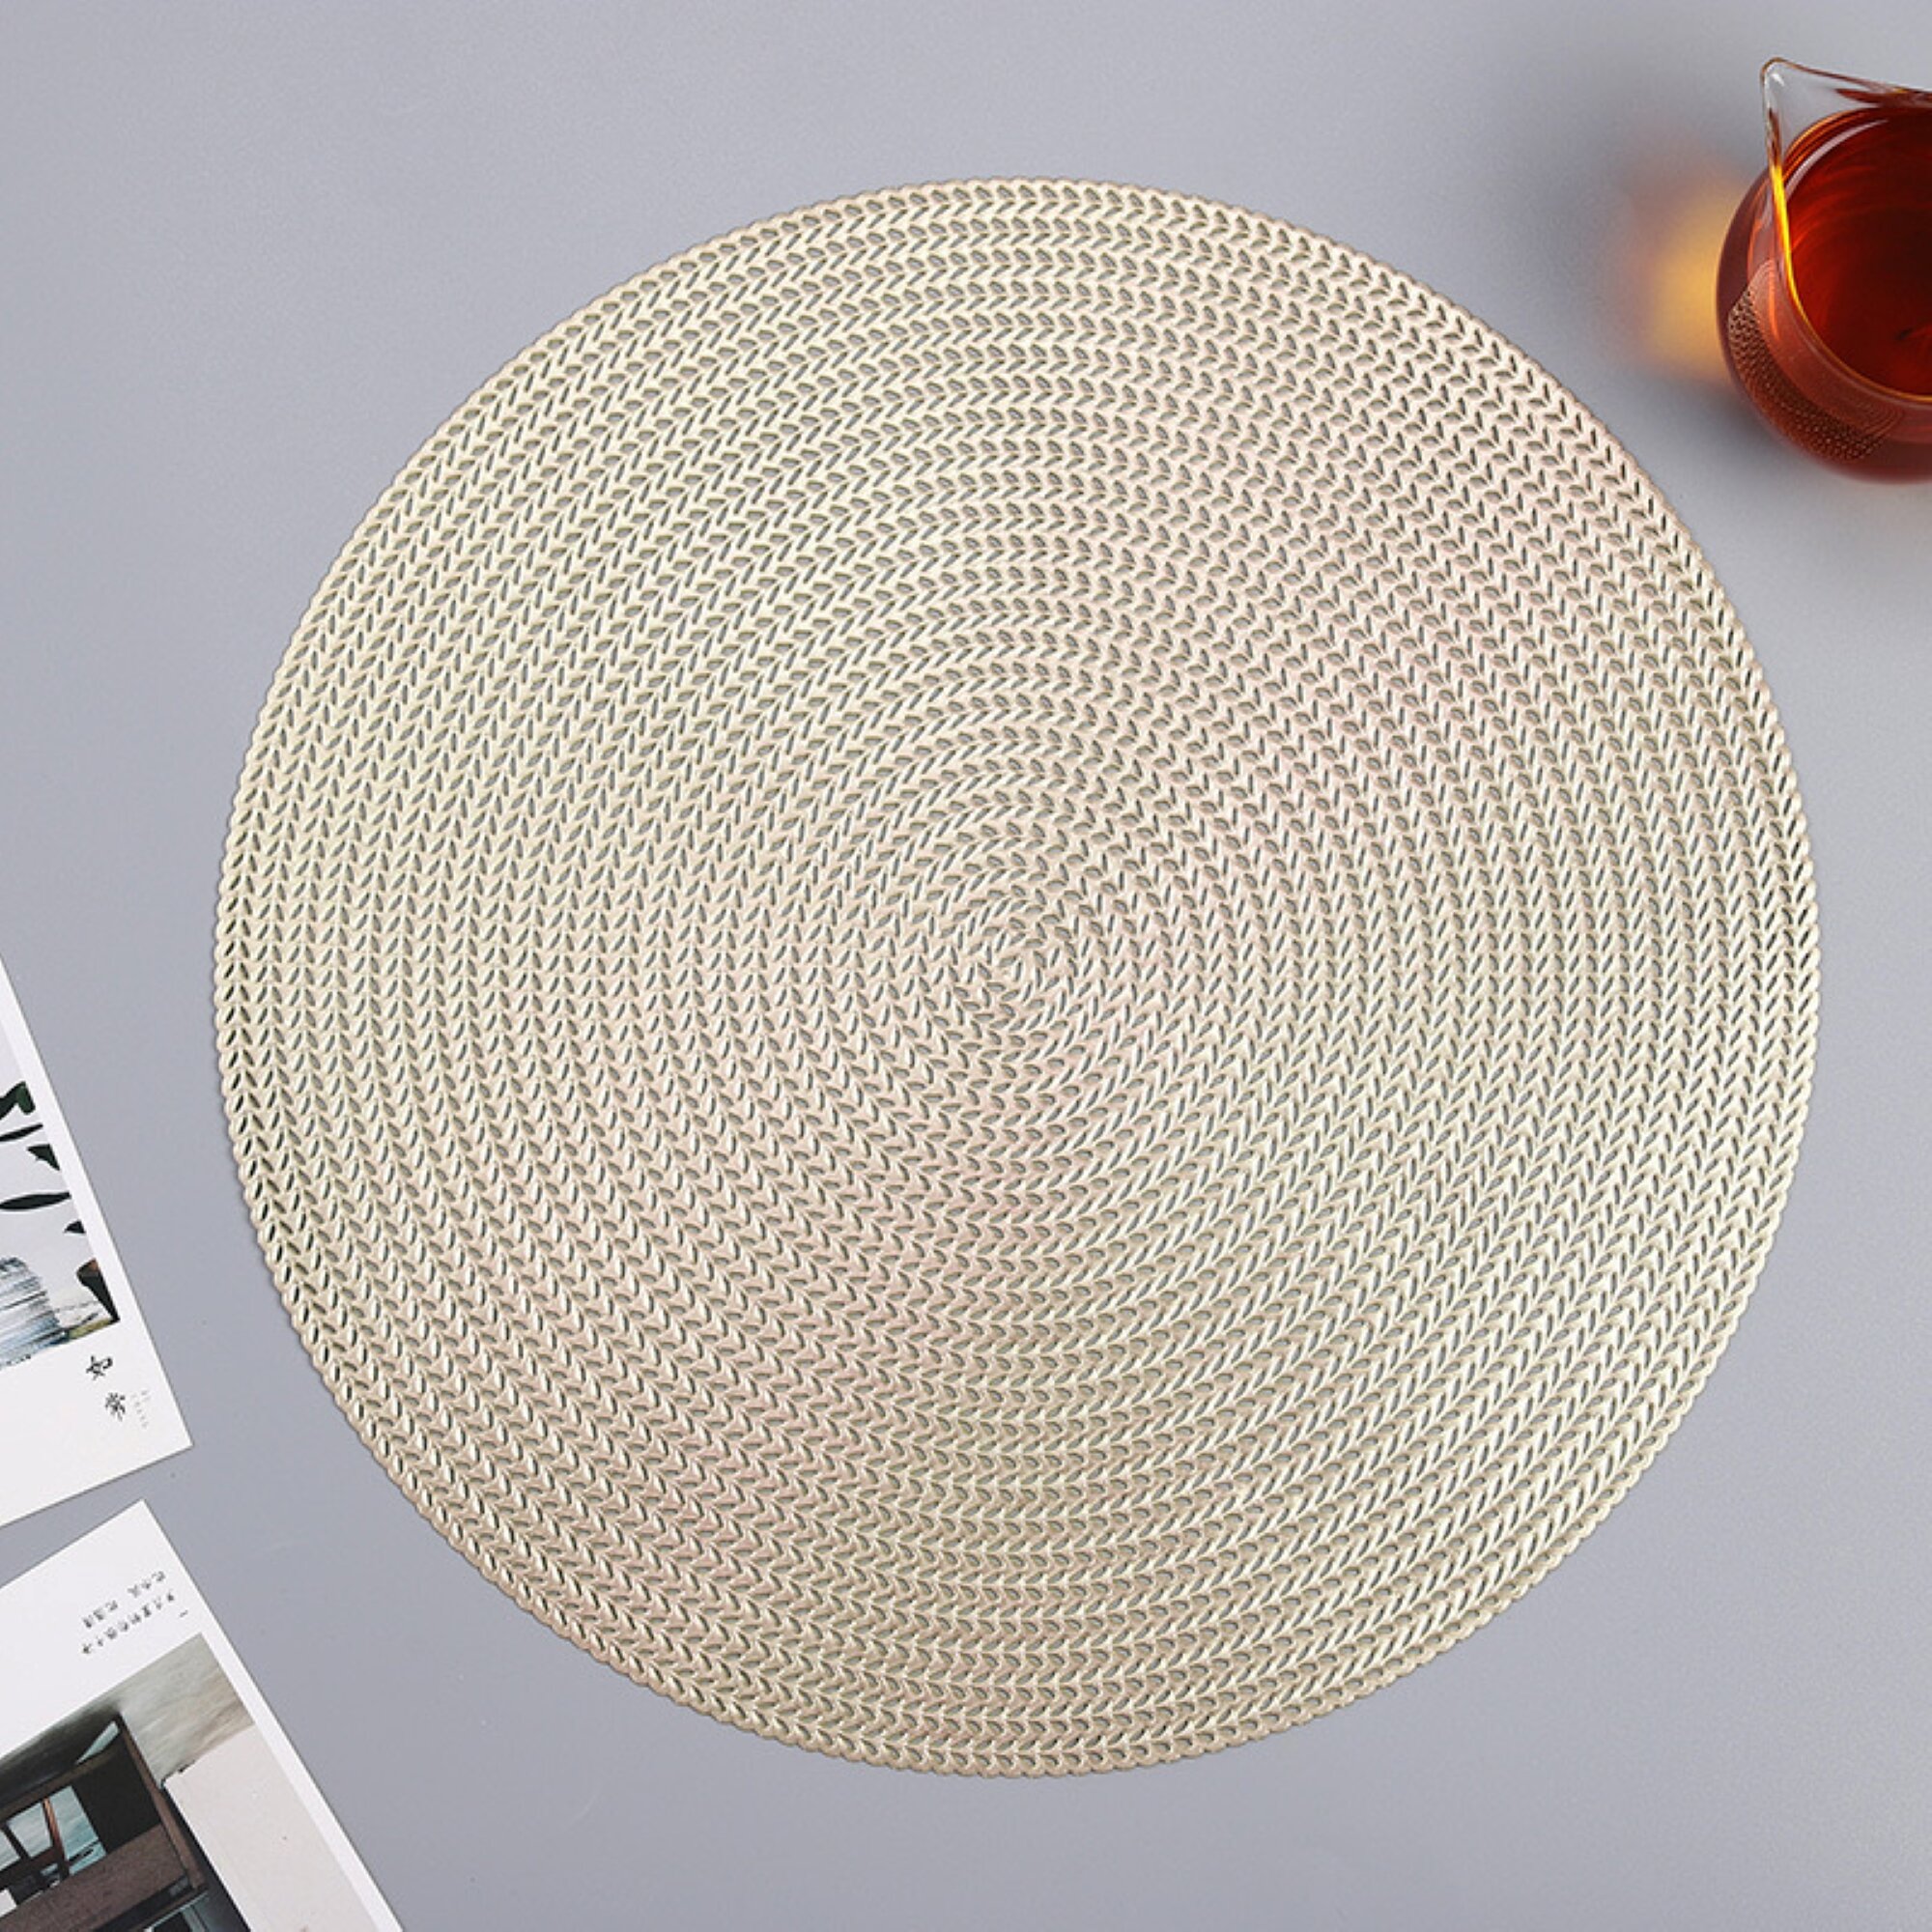 N/C placemats set of 4, heat-resistant woven vinyl placemat, non